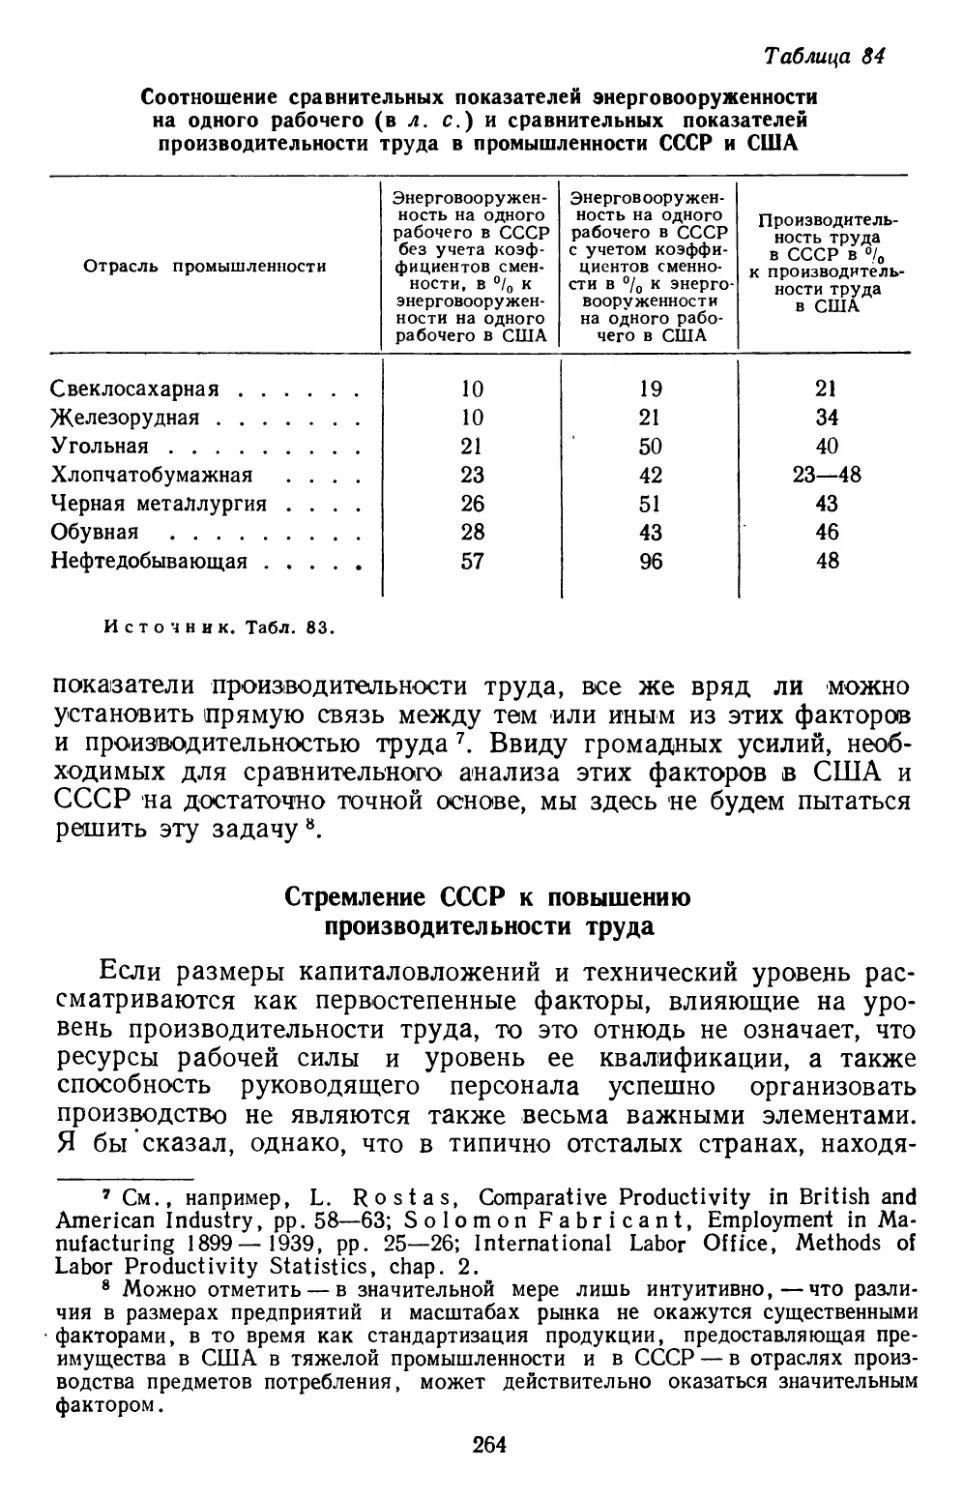 Стремление СССР к повышению производительности труда